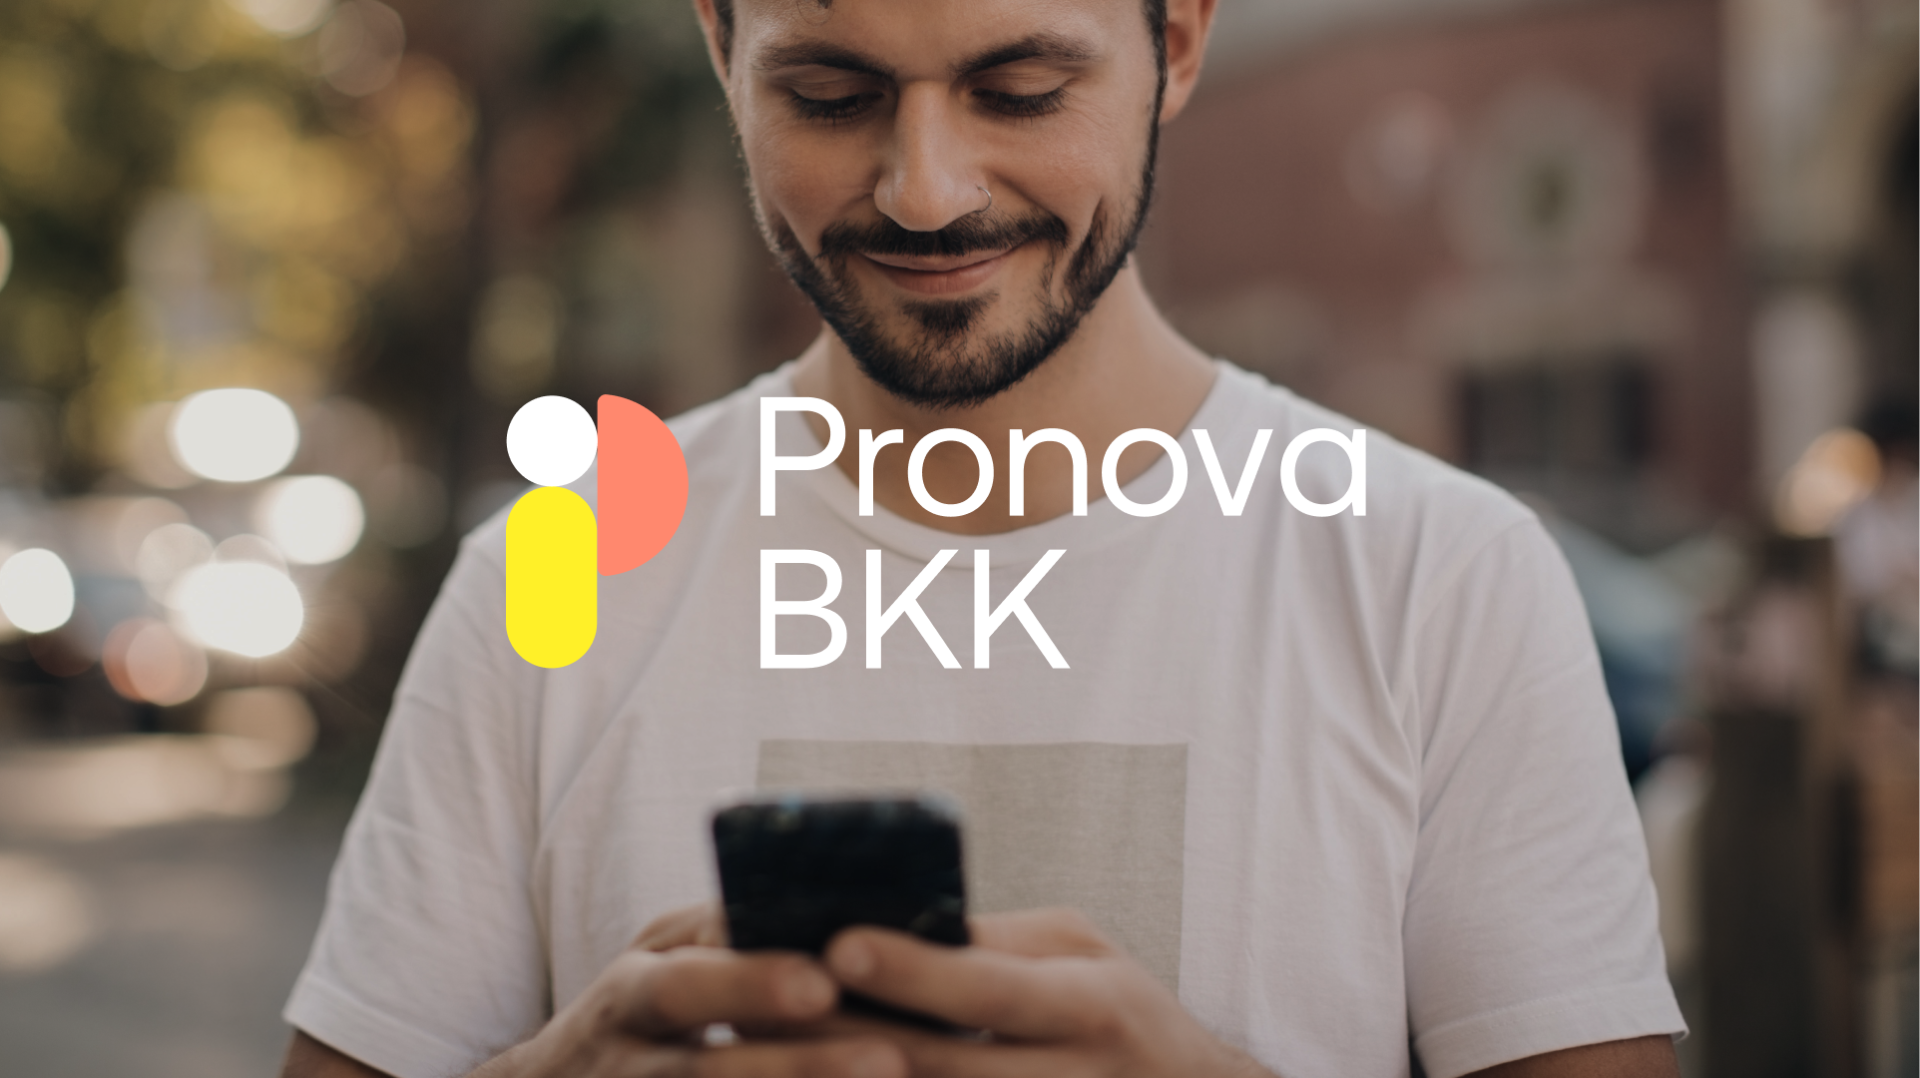 Pronova BKK Logo auf Person